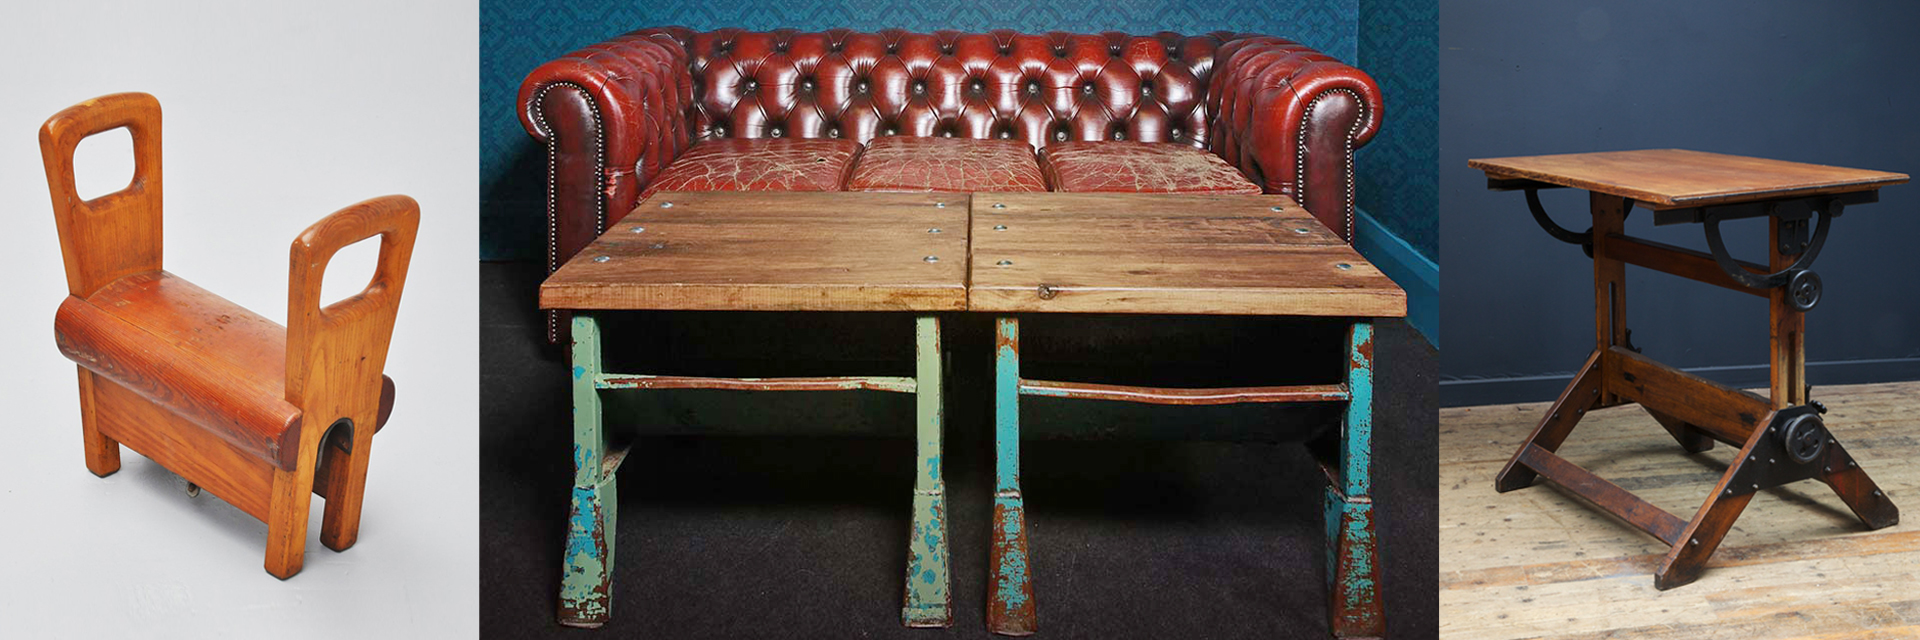 Cheval d’Arçons, 1950s, par Mass Modern Design ; Canapé Chesterfield et Table de Rangement Industrielle ; Table d’Architecte, 1890s, par Drew Pritchard